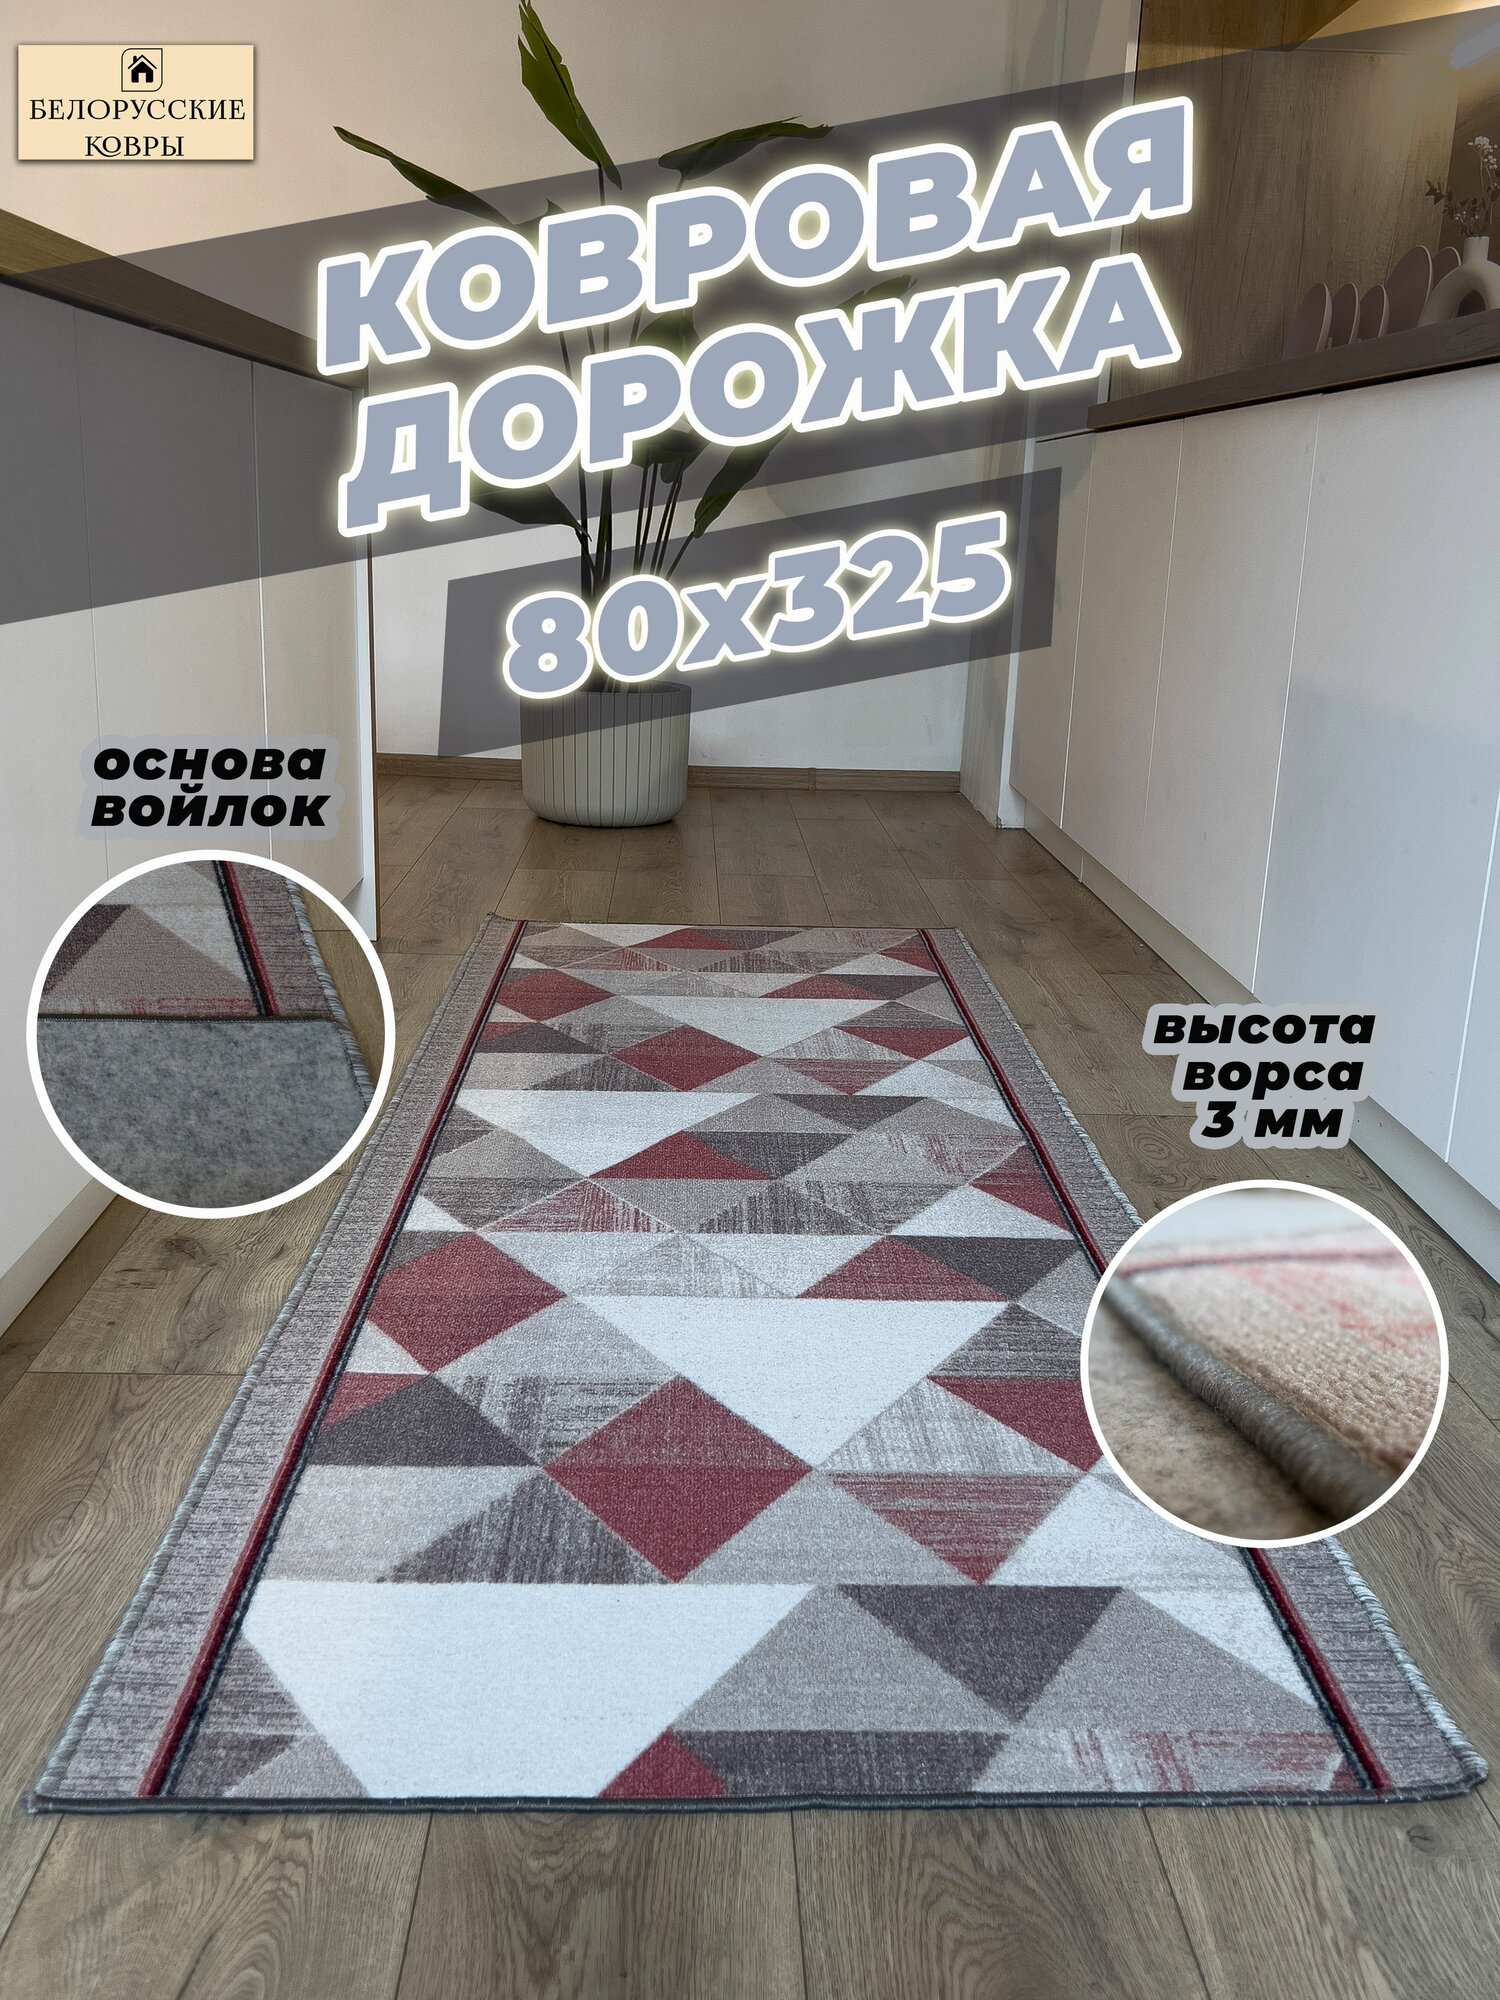 Белорусские ковры, ковровая дорожка 80х325см./0,8х3,25м.